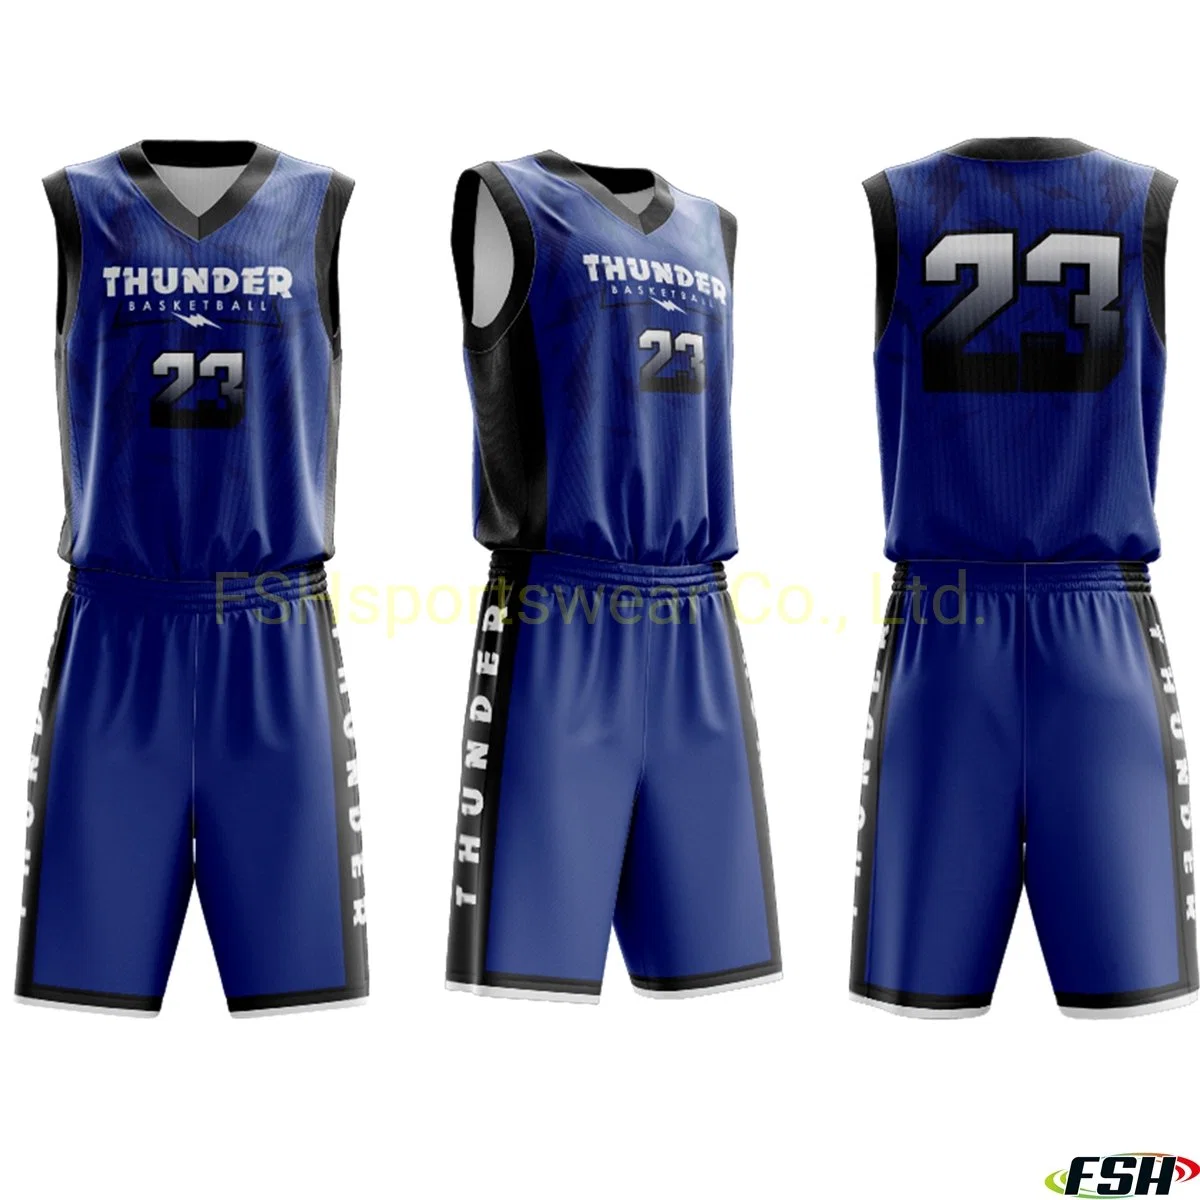 Personalizado de alta calidad el baloncesto Jersey uniforme de baloncesto de la sublimación Shooting Shirt sublima Sportswear